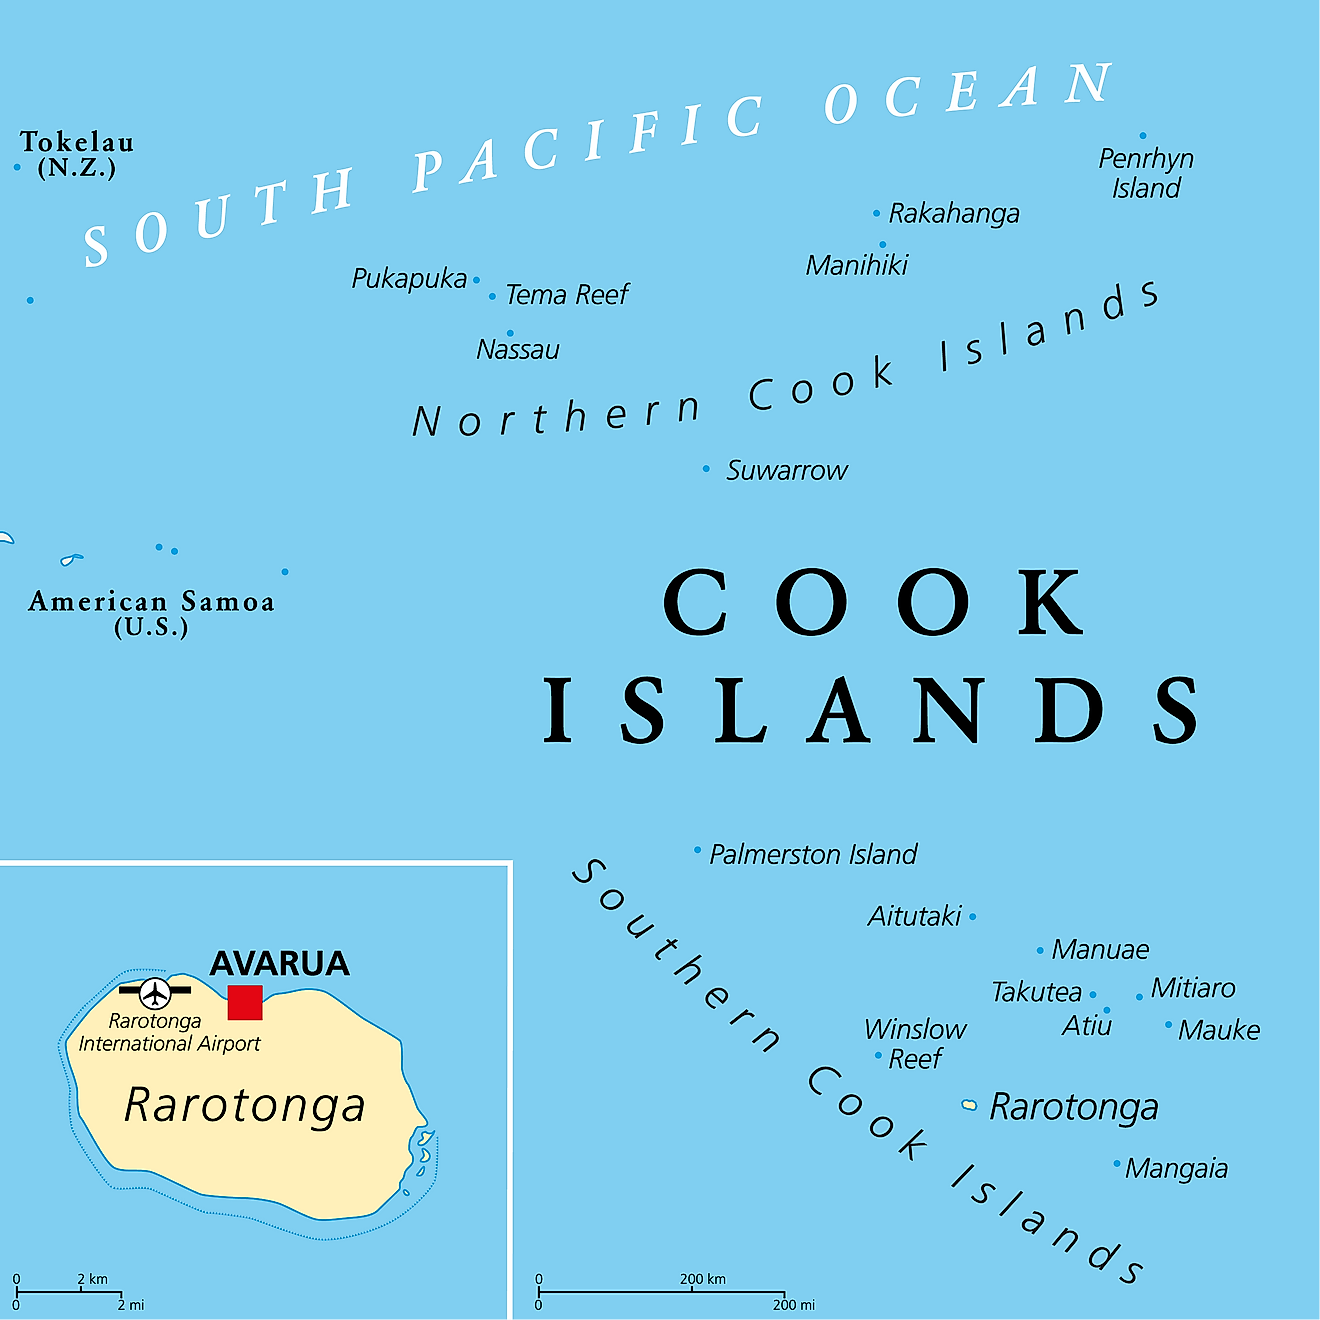 Mapa Político de las Islas Cook mostrando su ciudad capital - Avarua